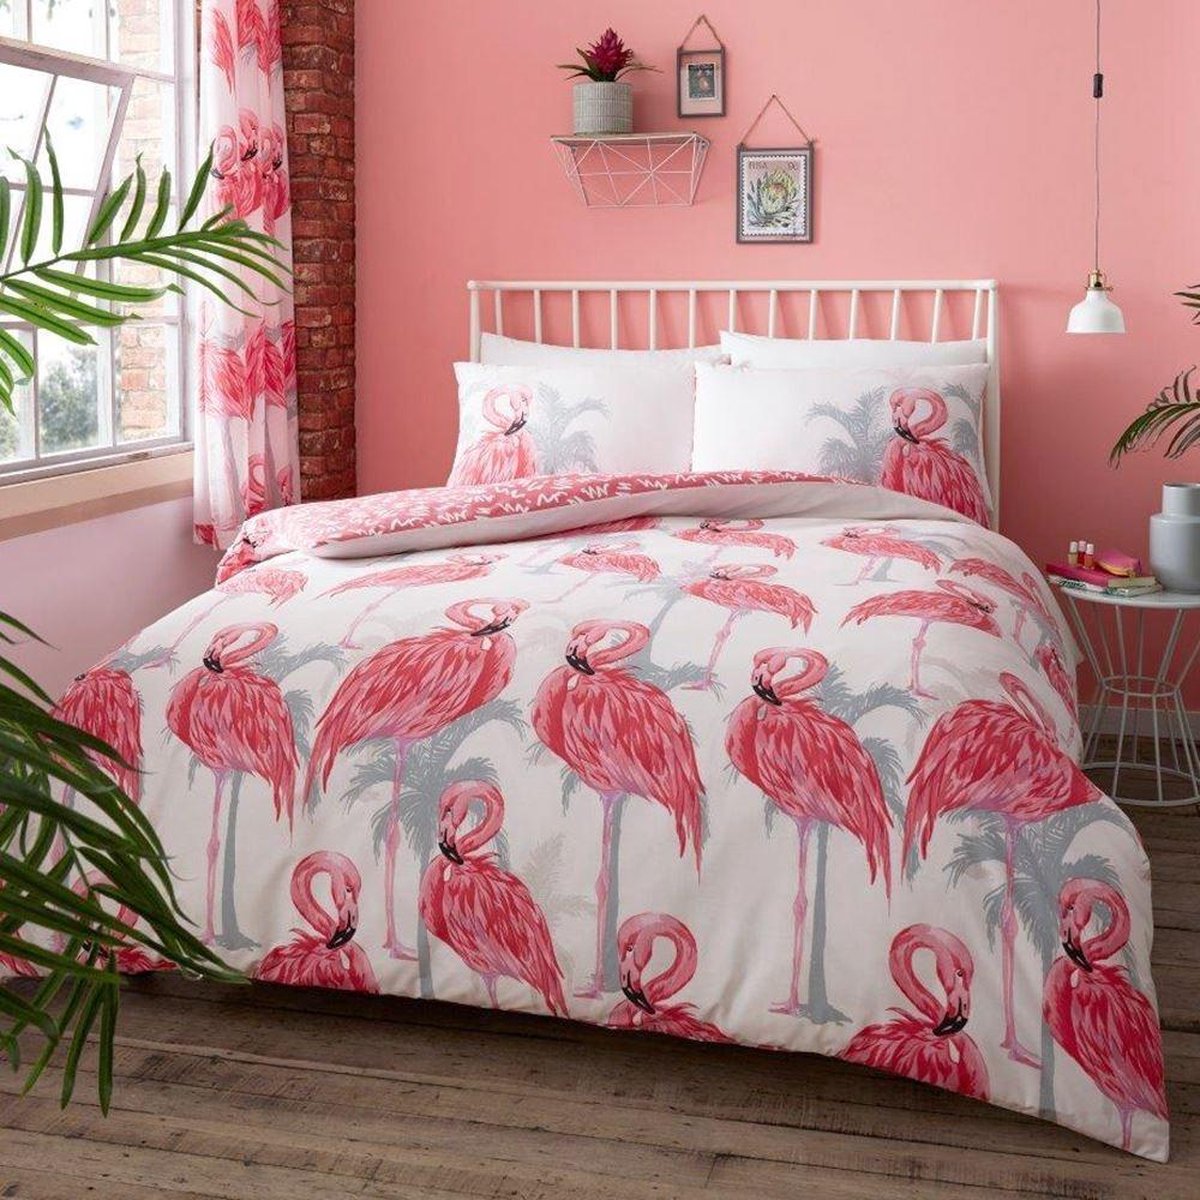 Flamingo dekbedovertrek - eenpersoons - Flamingo's dekbed